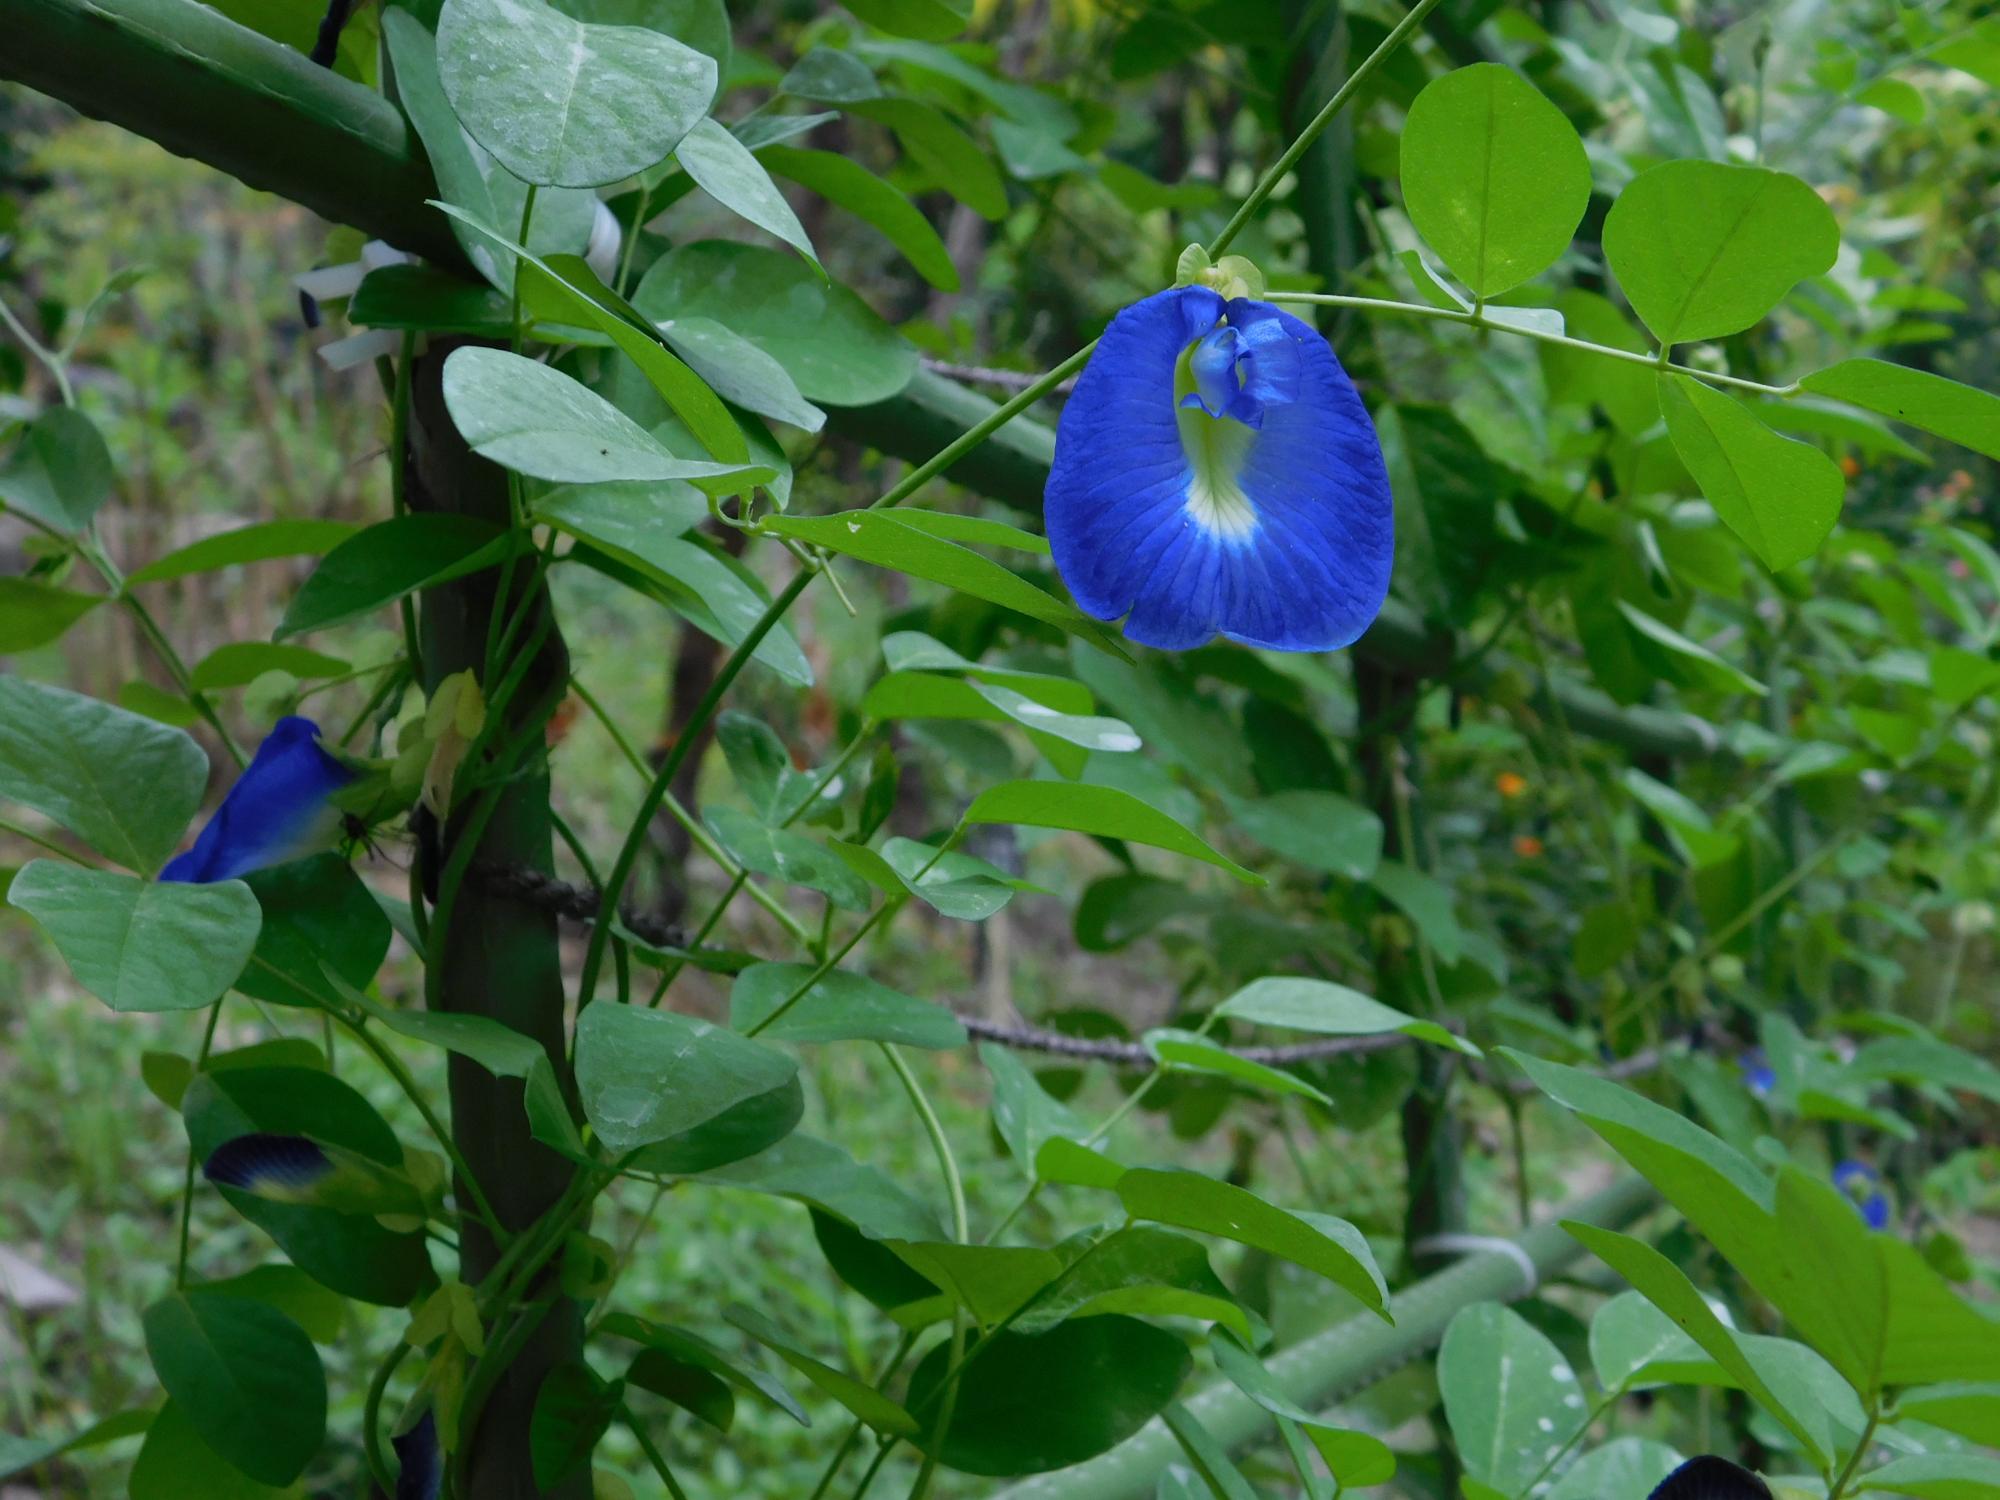 薬草園の「ハーブのこみち」入口付近のチョウマメの青い花です。チョウマメは、マメ科のツル性のハーブです。